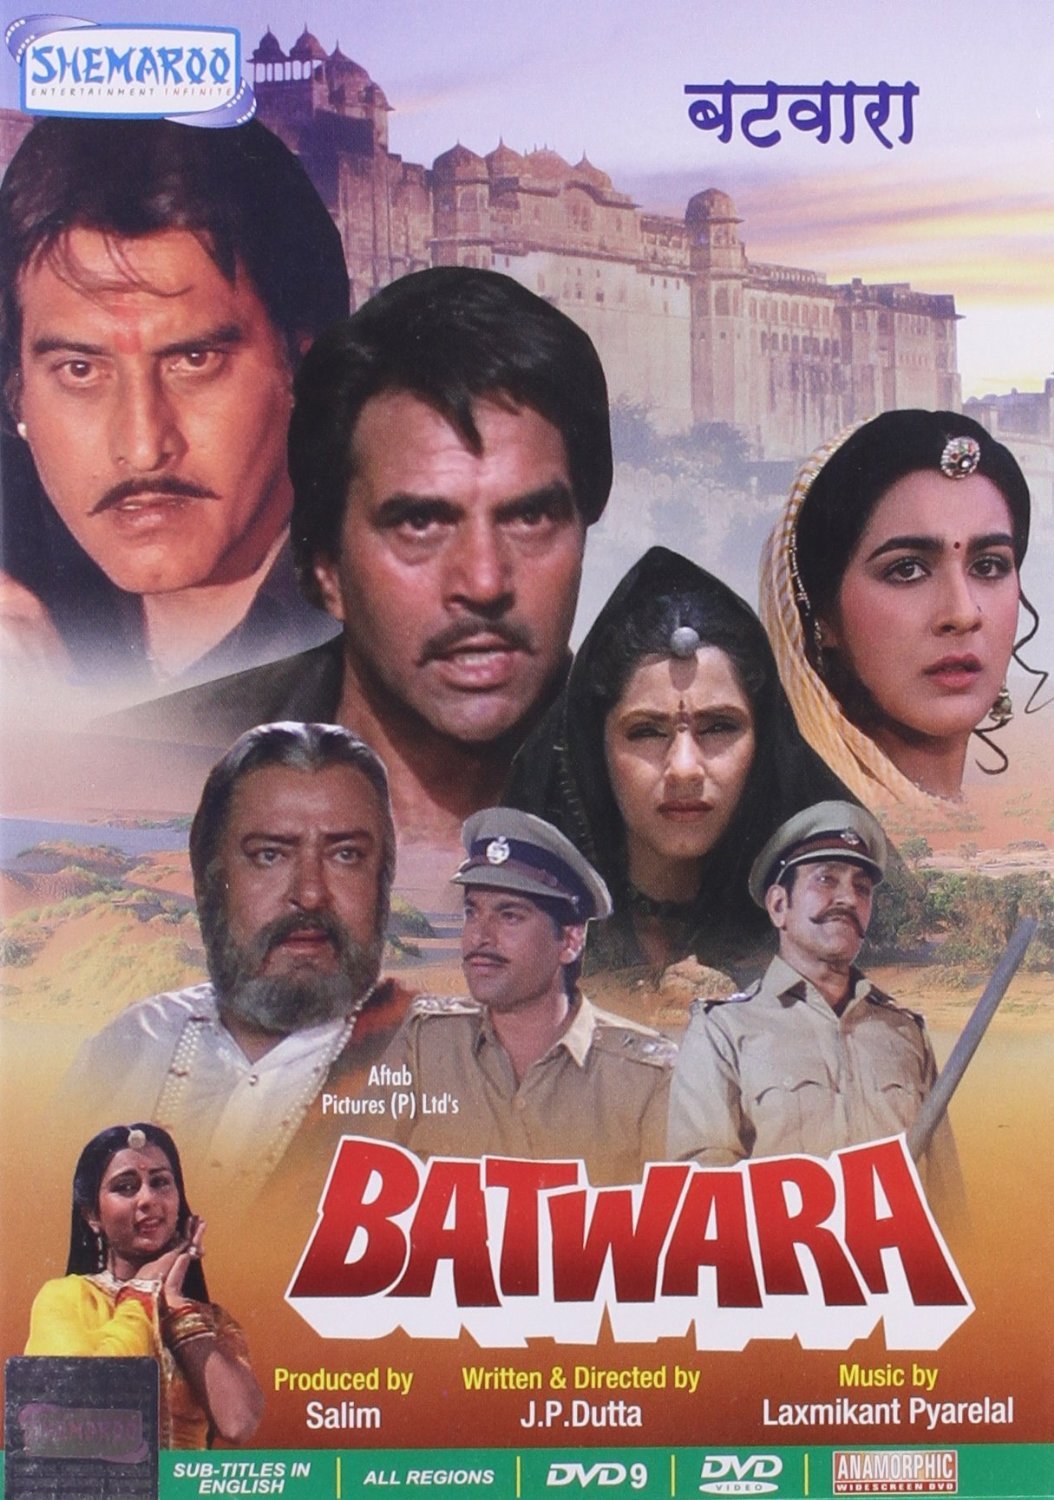 Batwara Movie Poster